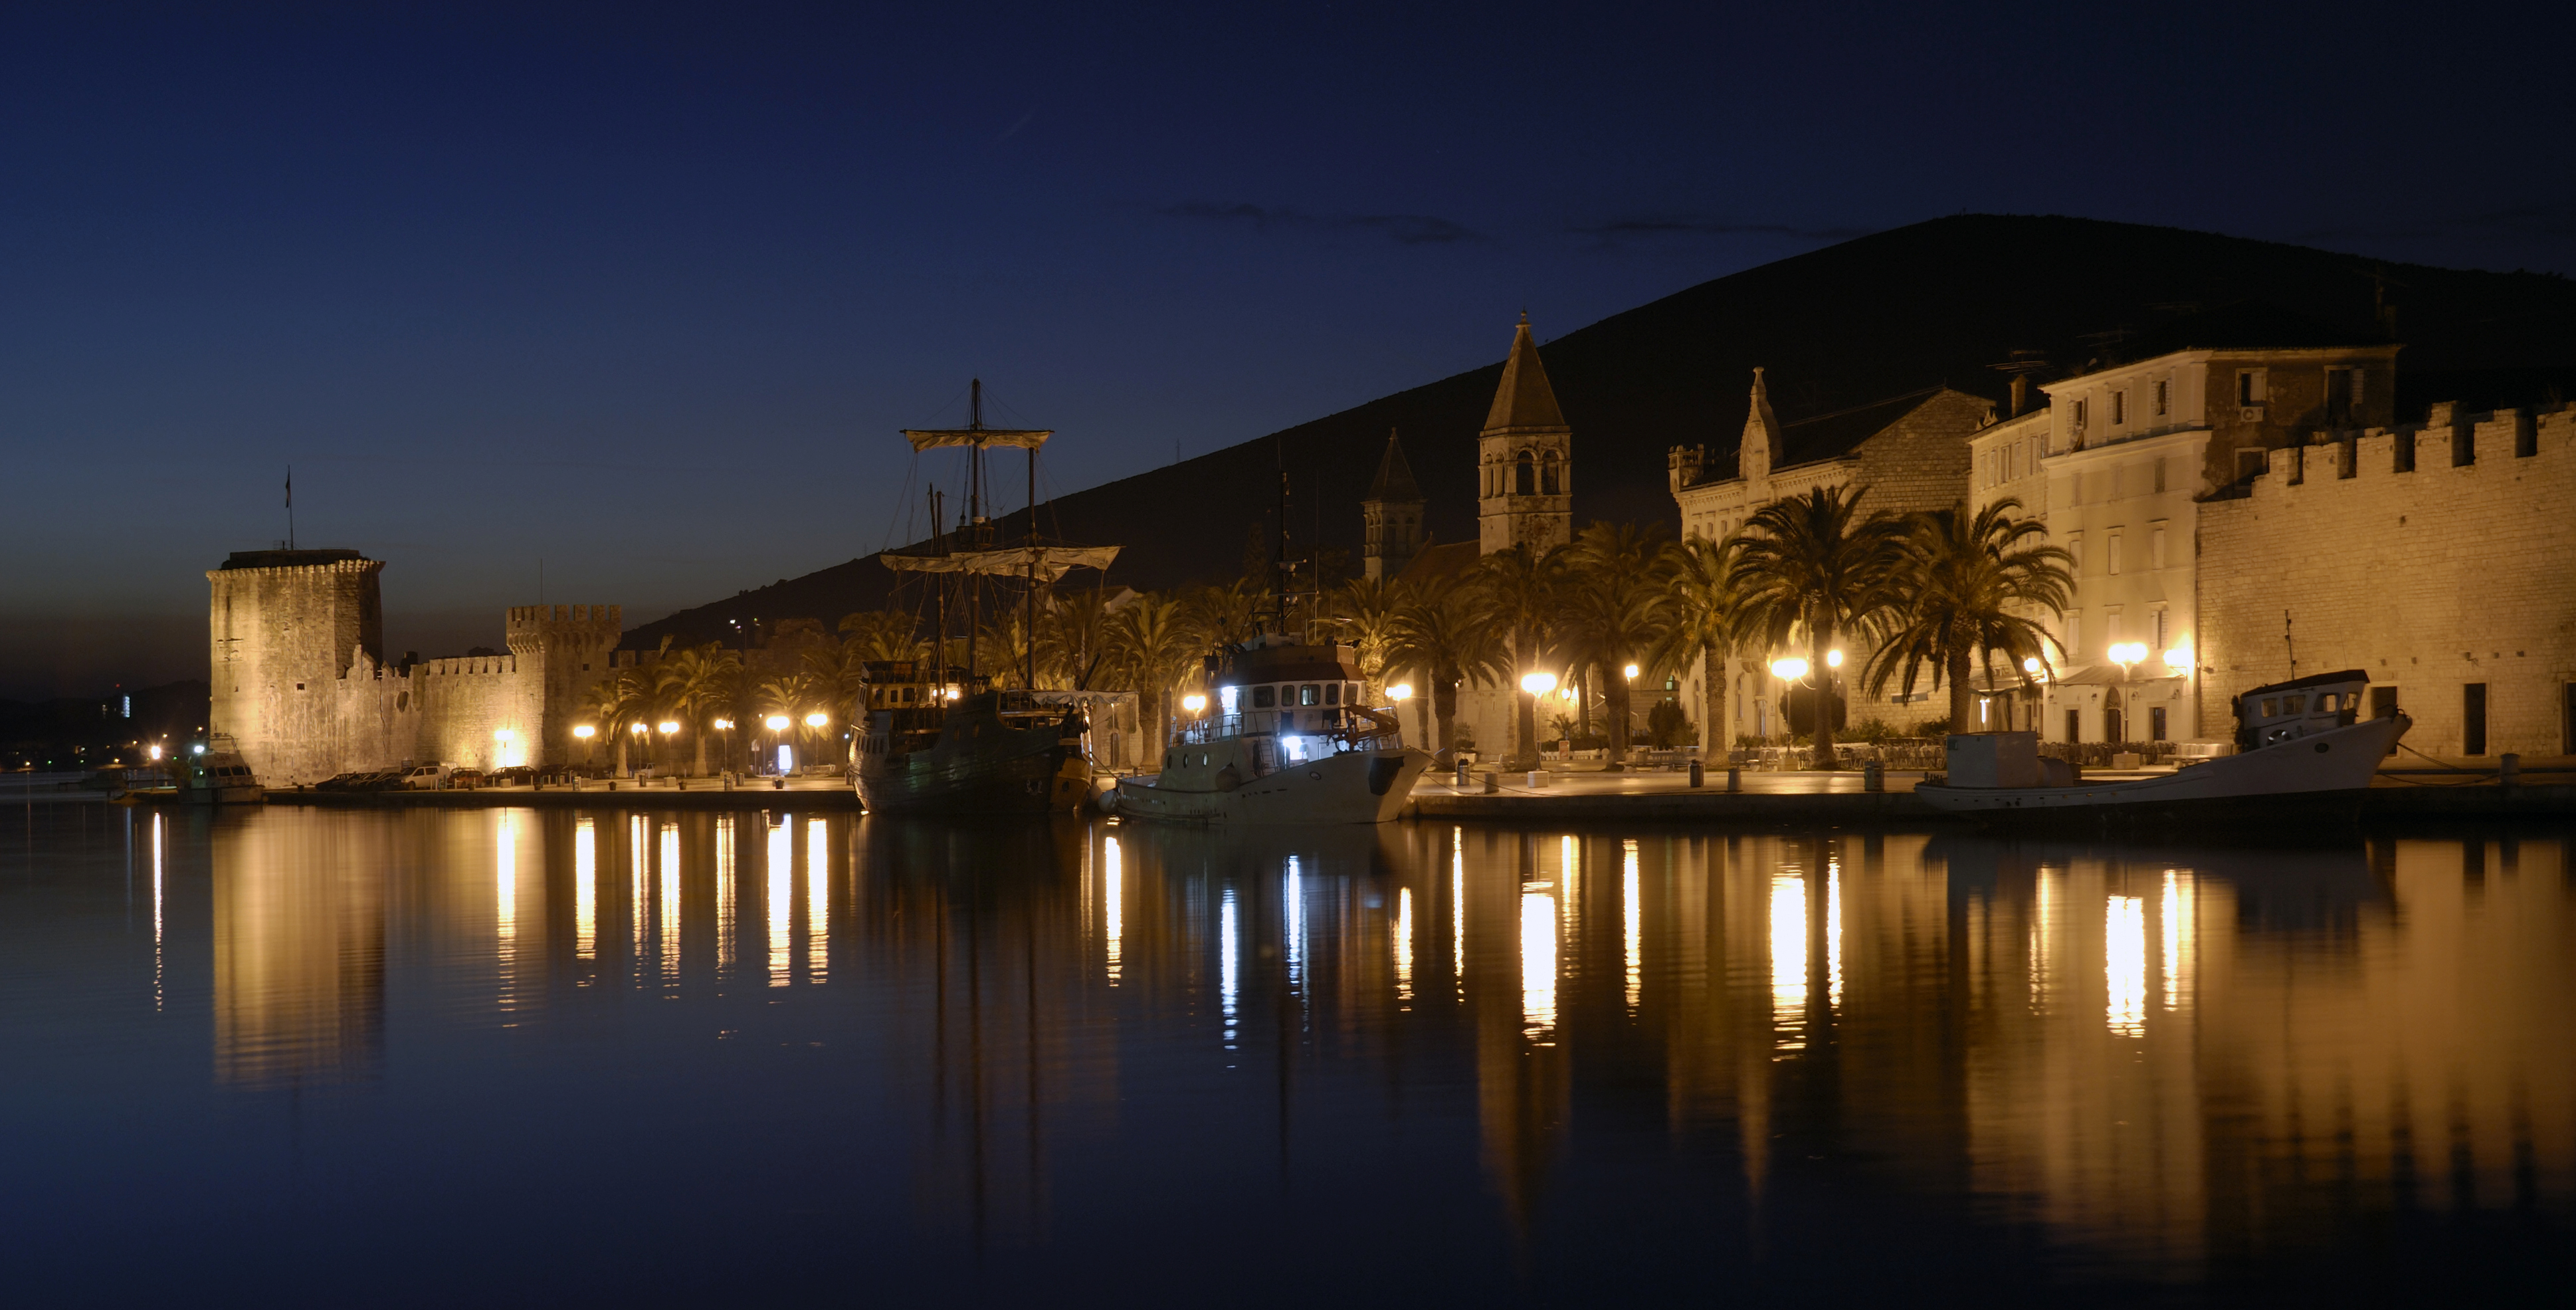 Trogir at night, Croatia